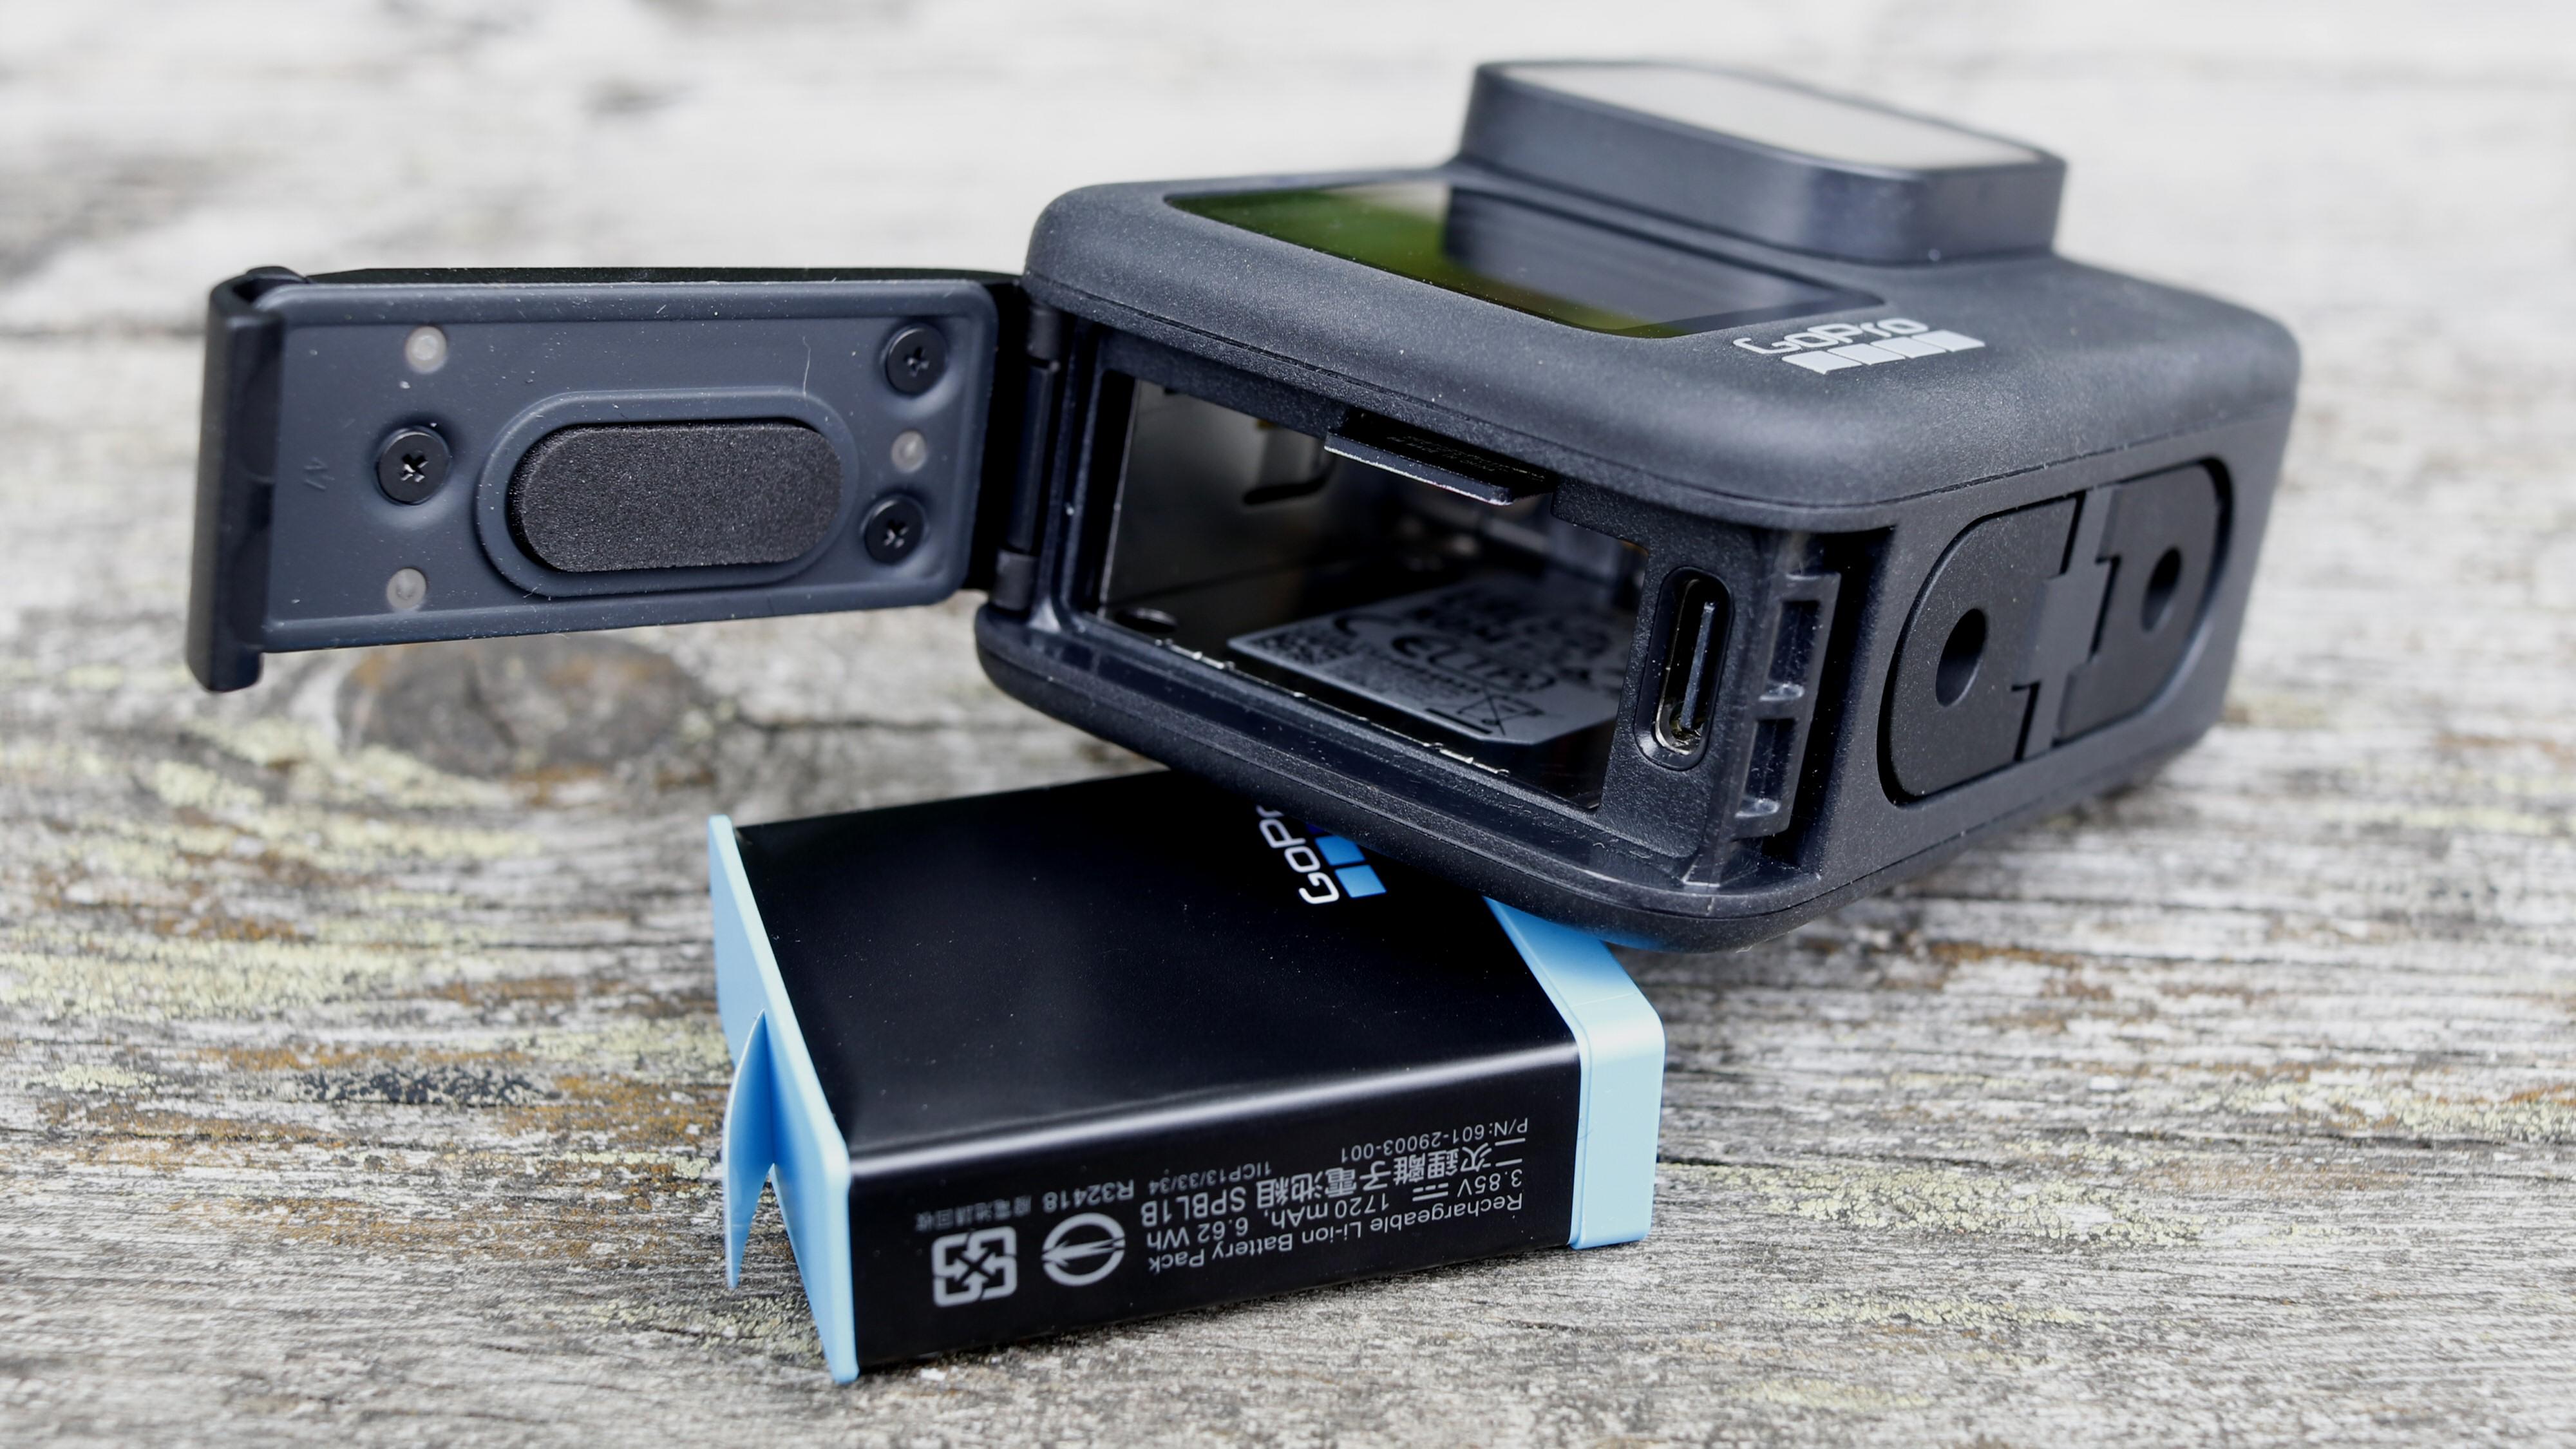 GoPro Hero9 Black har kun én luke. Her finner vi USB-C-porten, samt batteri og plass til microSD-kort.